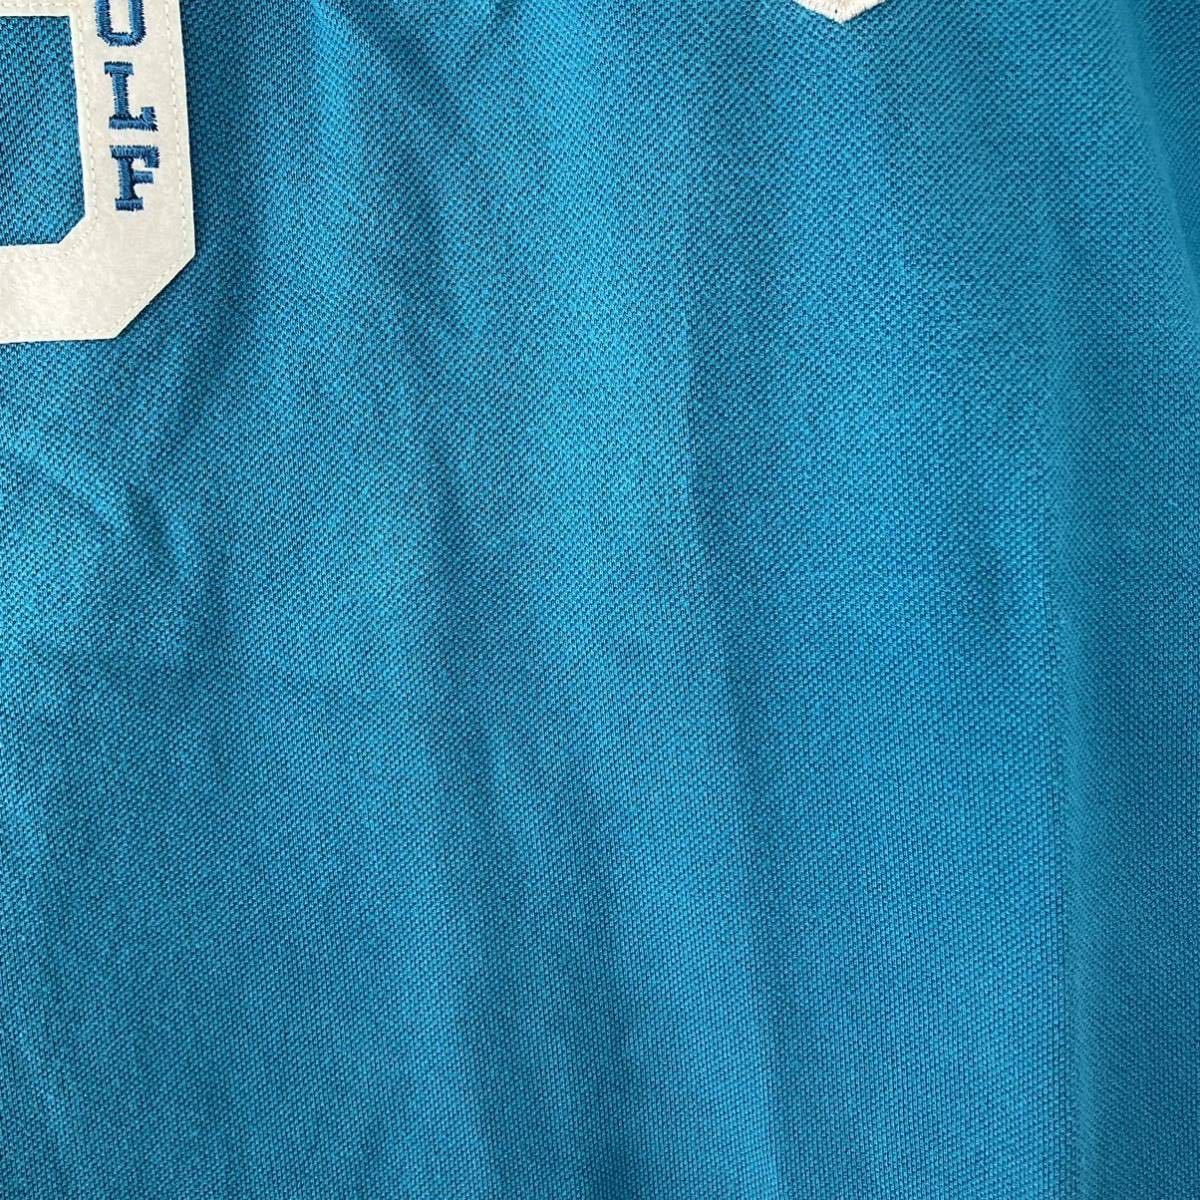 PEARLY GATES パーリーゲイツ 半袖 ポロシャツ レディース 1 M 青 ターコイズ ブルー カジュアル スポーツ golf ゴルフ ウェア ロゴ